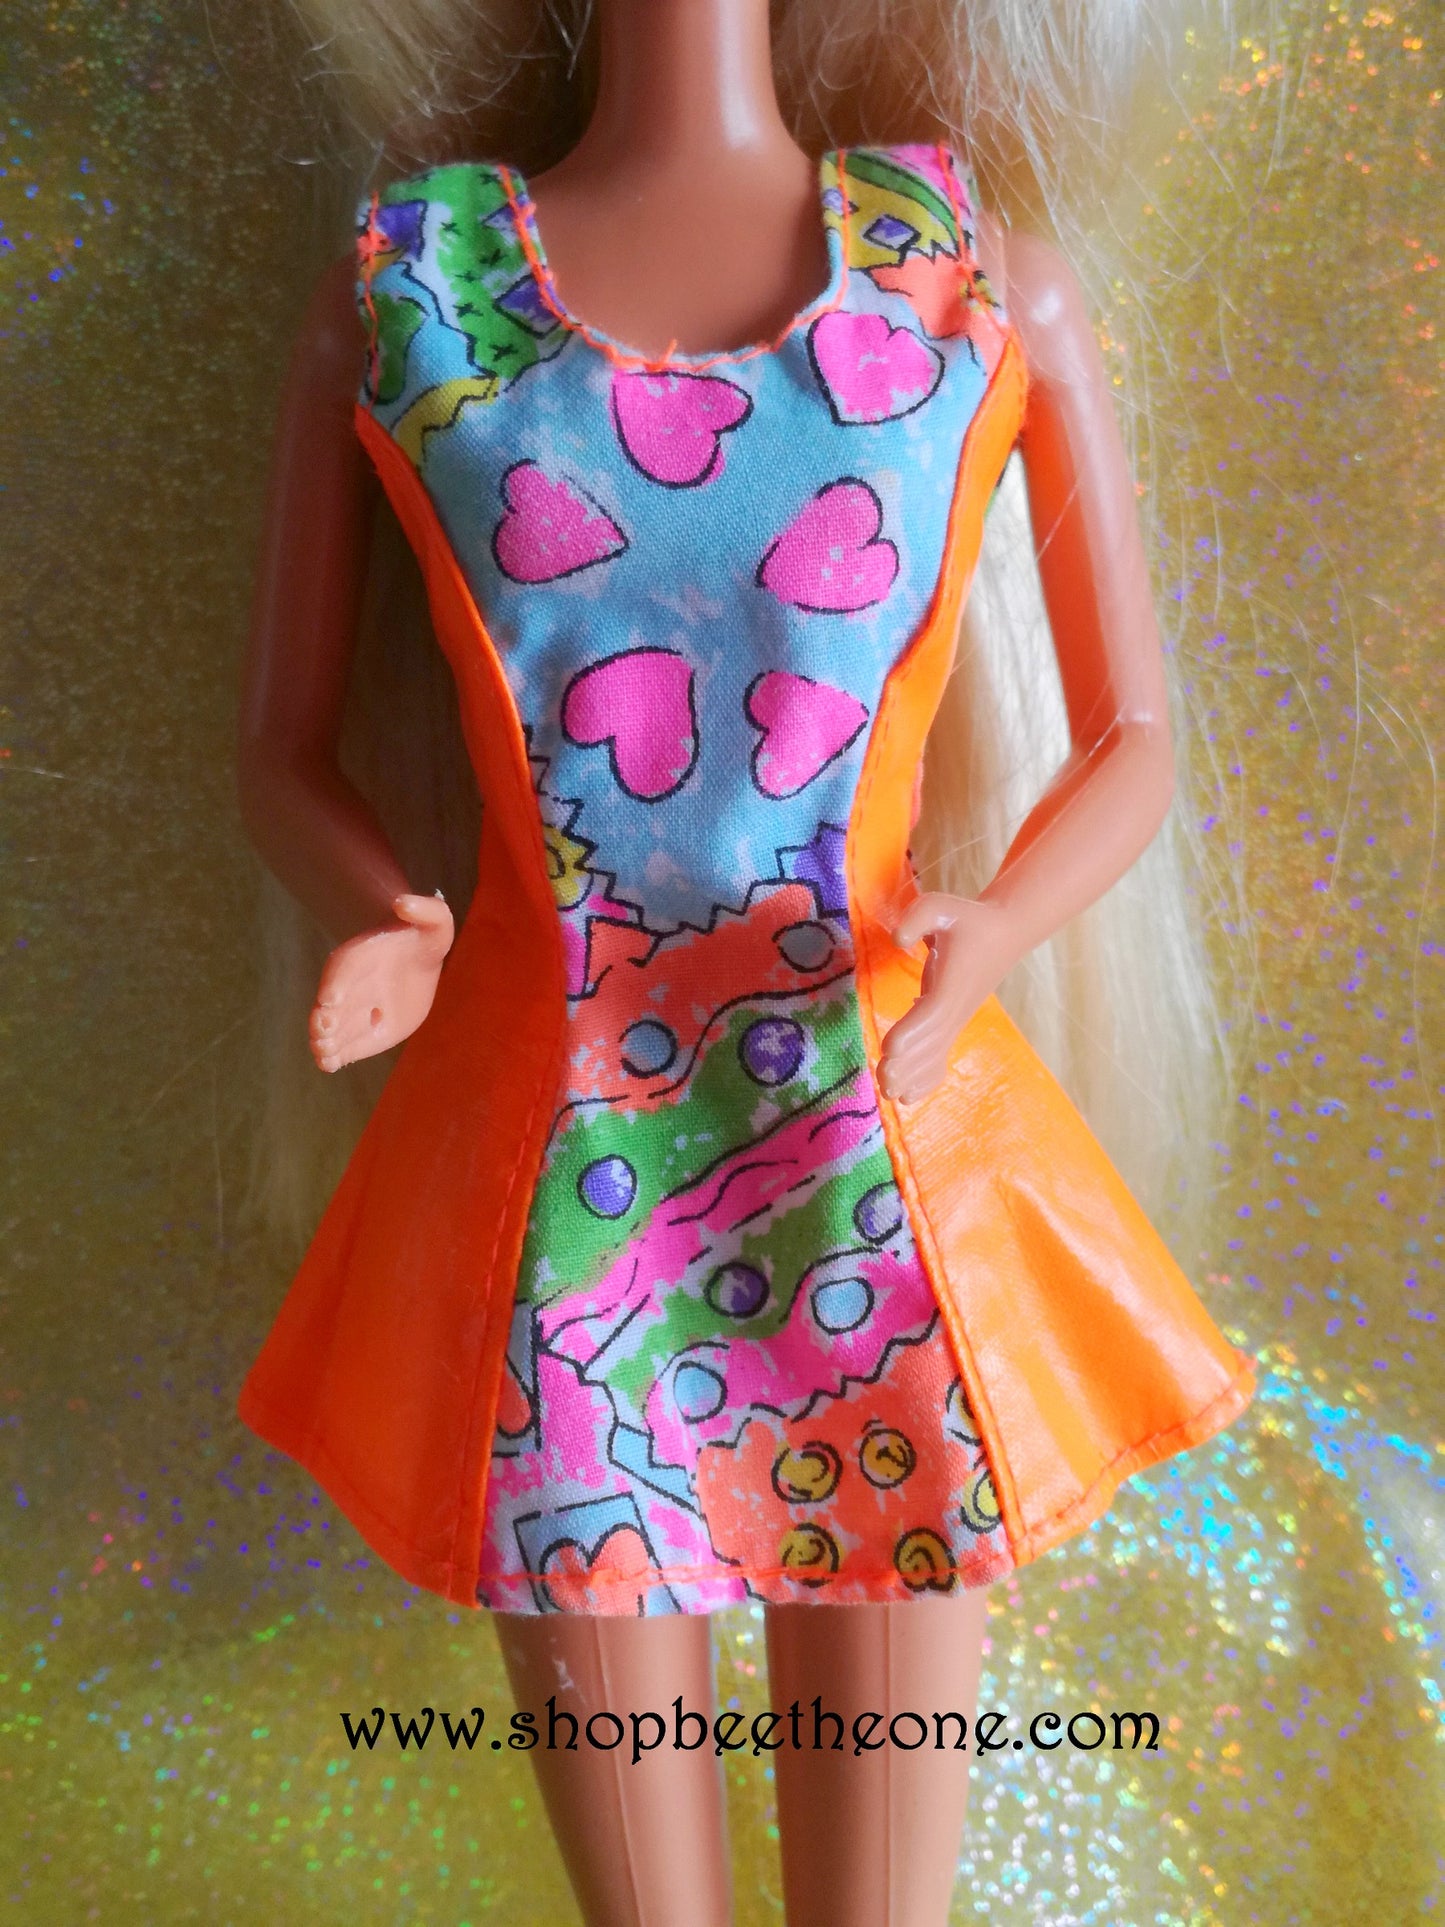 Barbie Habillage Activities Stick and Peel #11936 - Mattel 1994 - Vêtements - Exclusivité USA